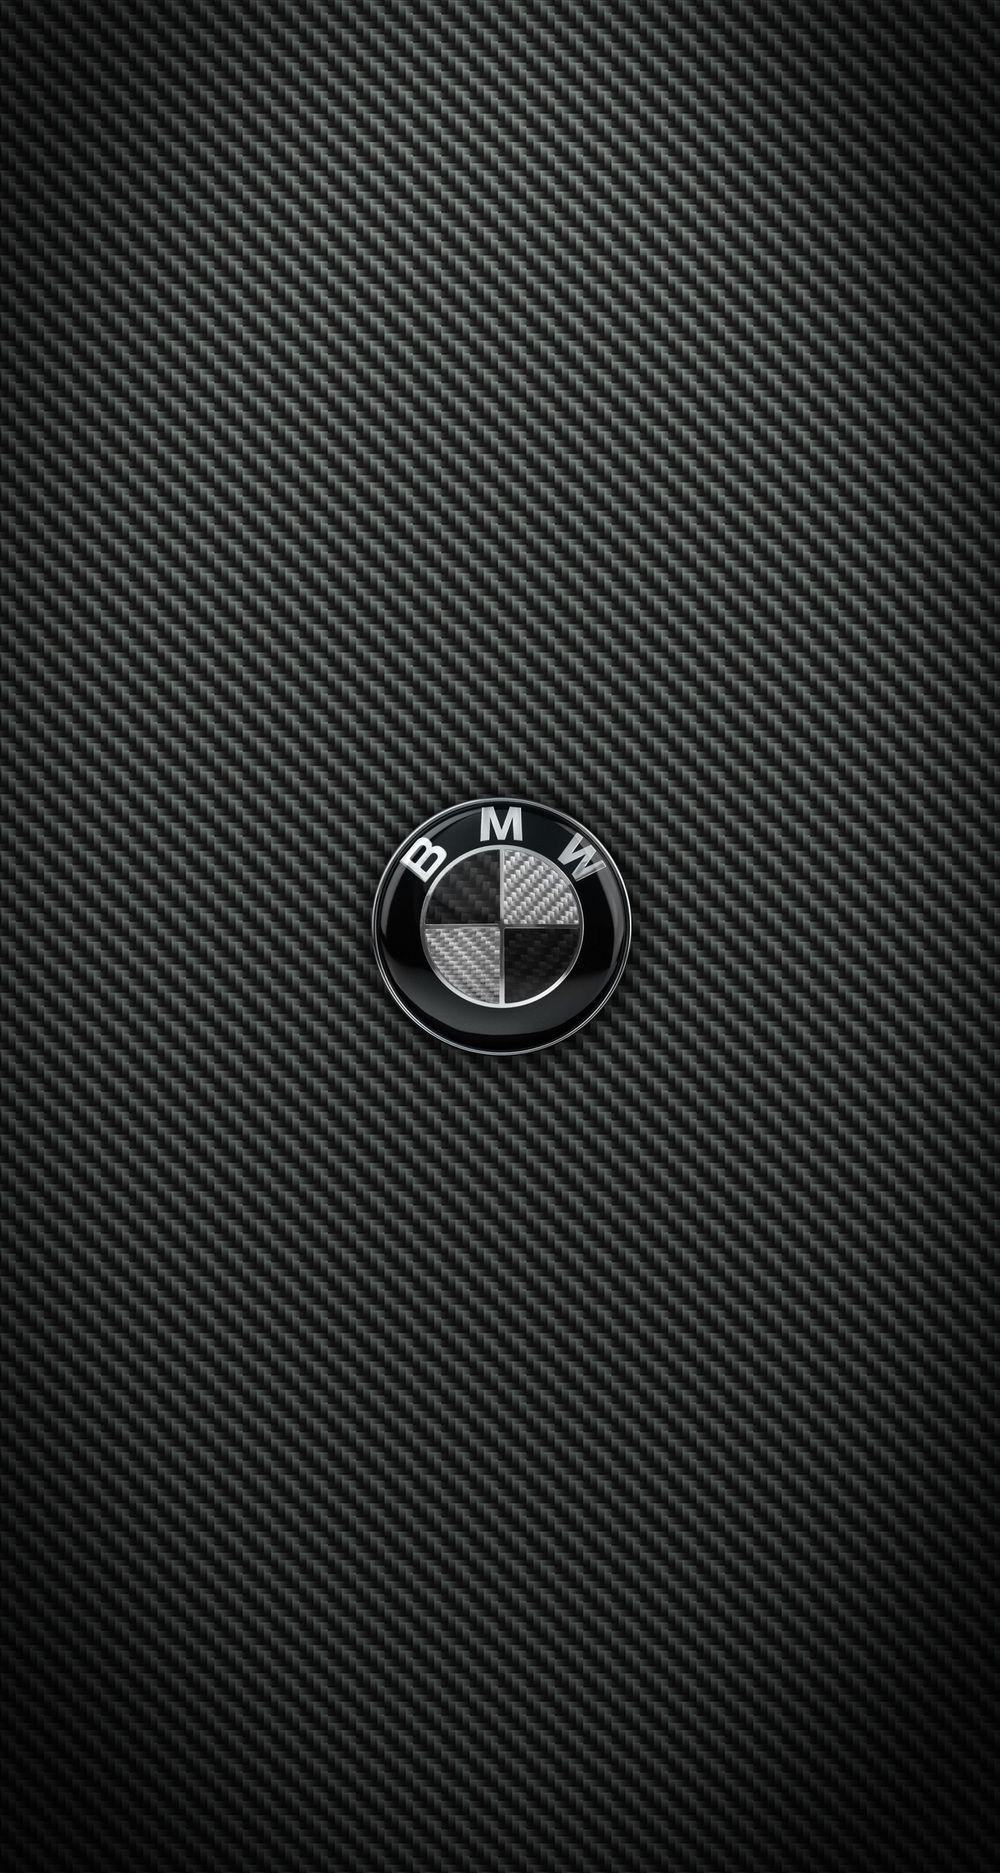 Bmw Logo Wallpaper 4K Iphone : BMW Logo HD Wallpaper (70 ...